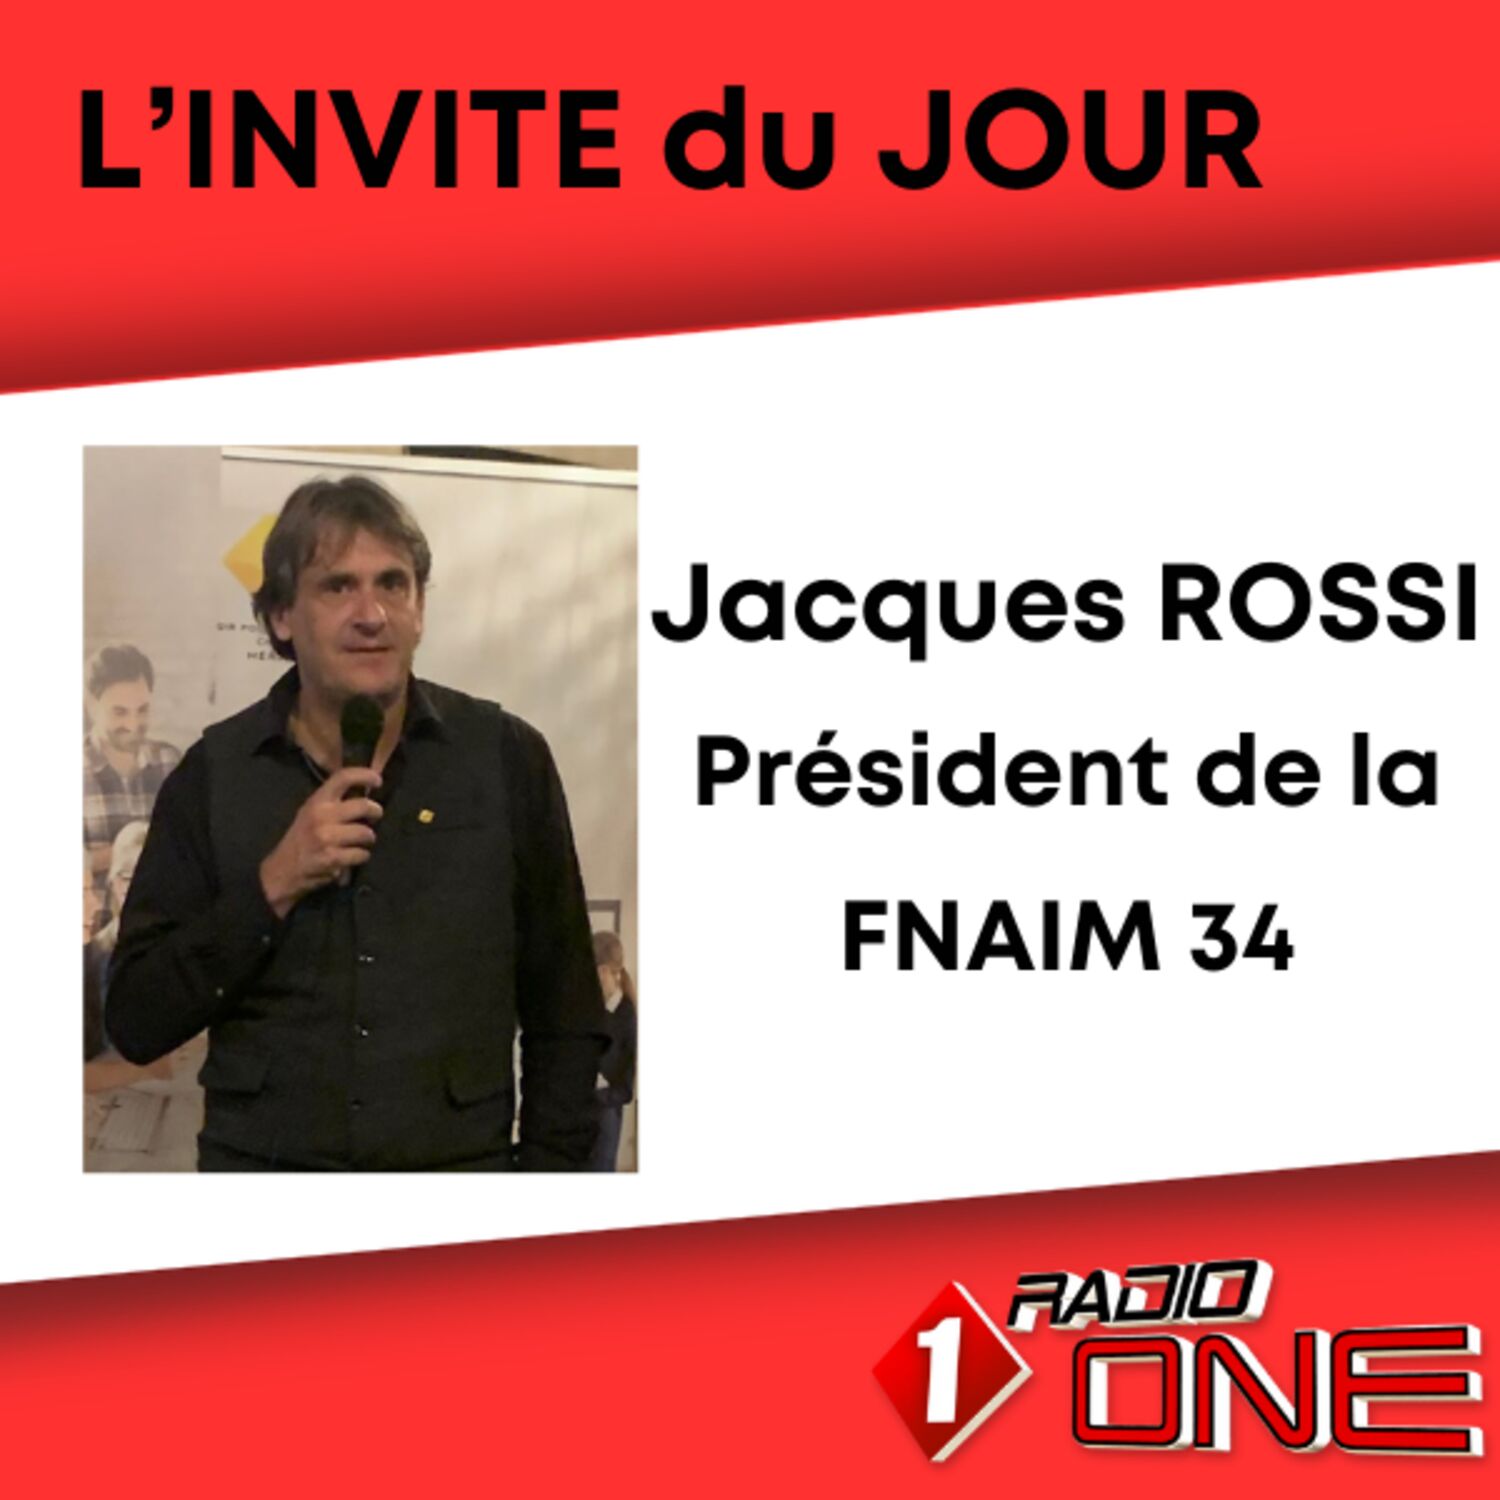 Jacques ROSSI, Président de la FNAIM 34